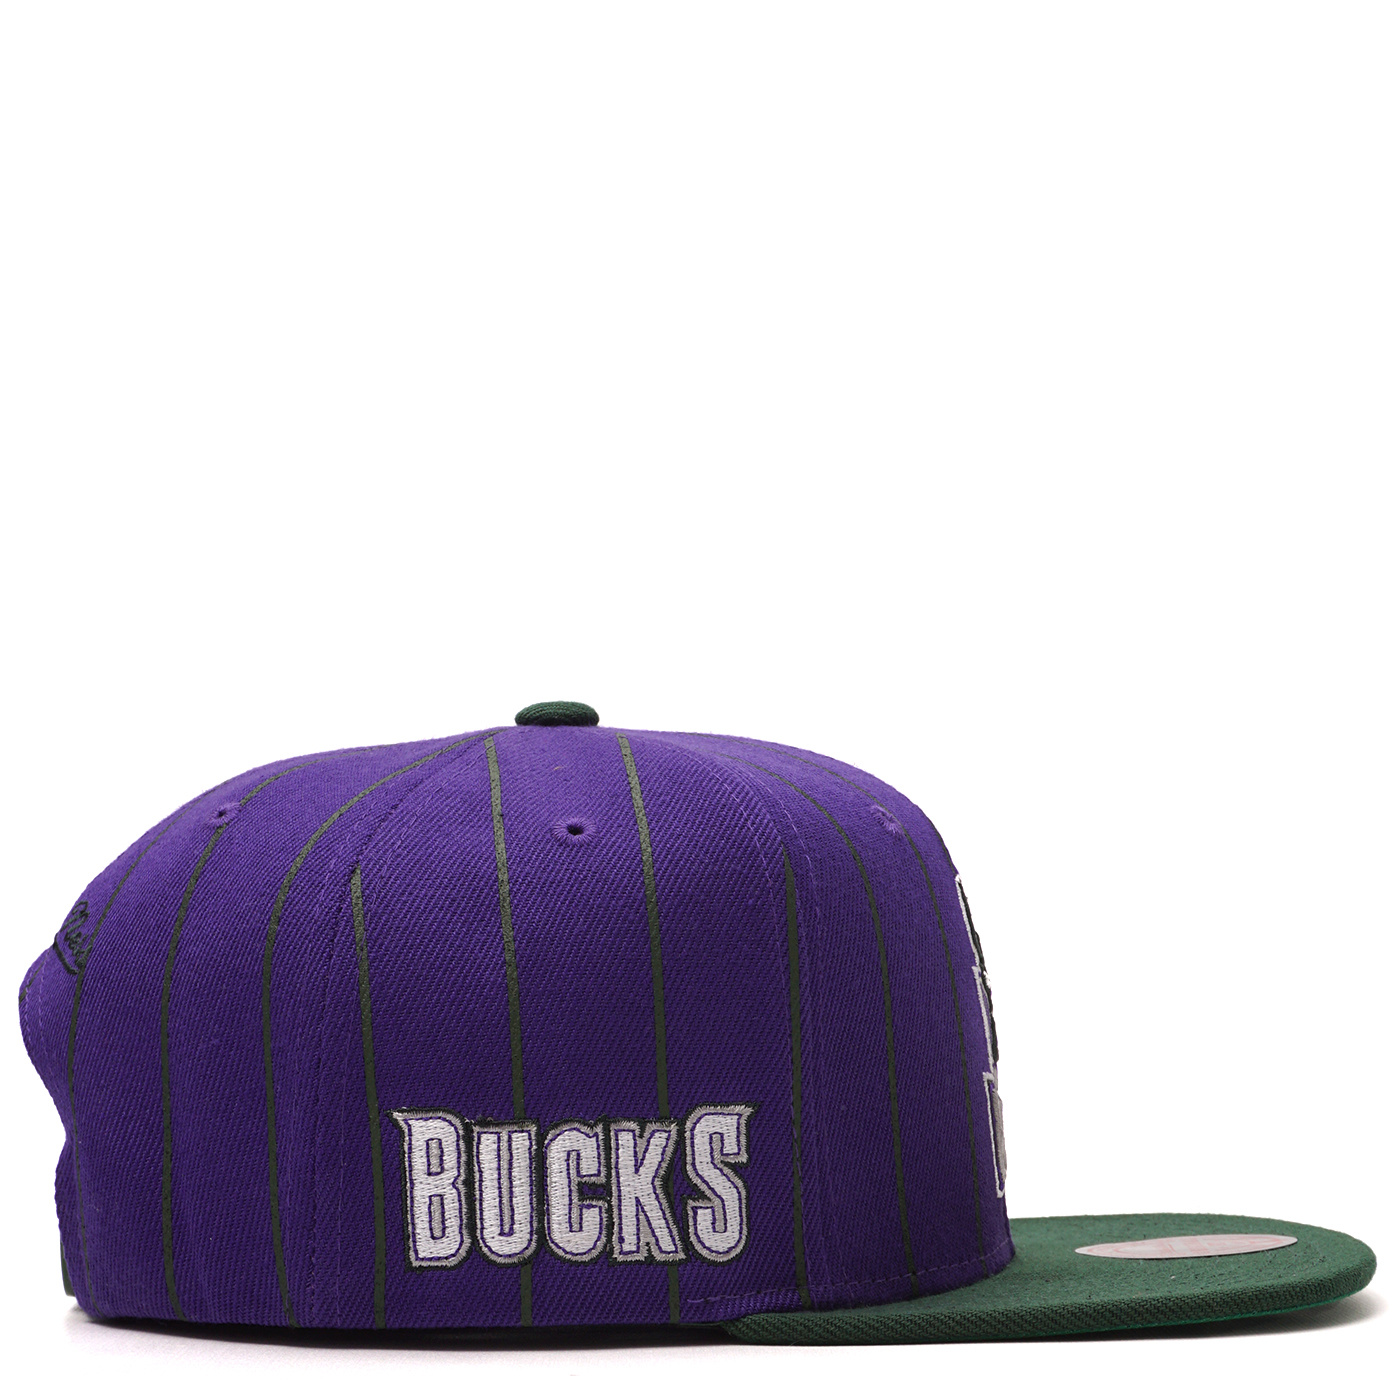 Mitchell & Ness Milwaukee Bucks Retro Pinstripe Snapback Hat - White - MODA3